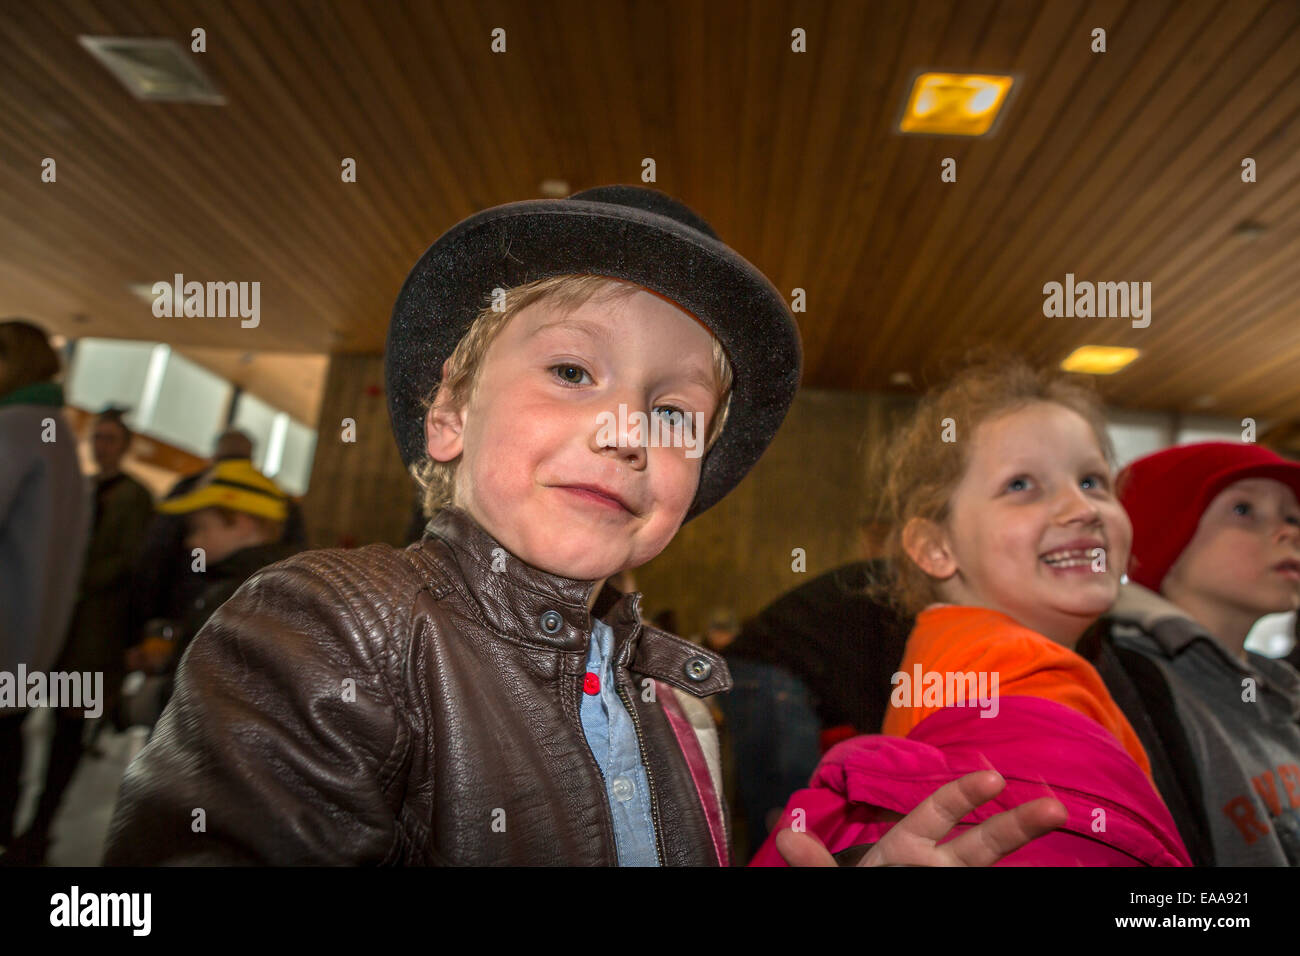 Children at an art exhibition, Reykjavik, Iceland Stock Photo